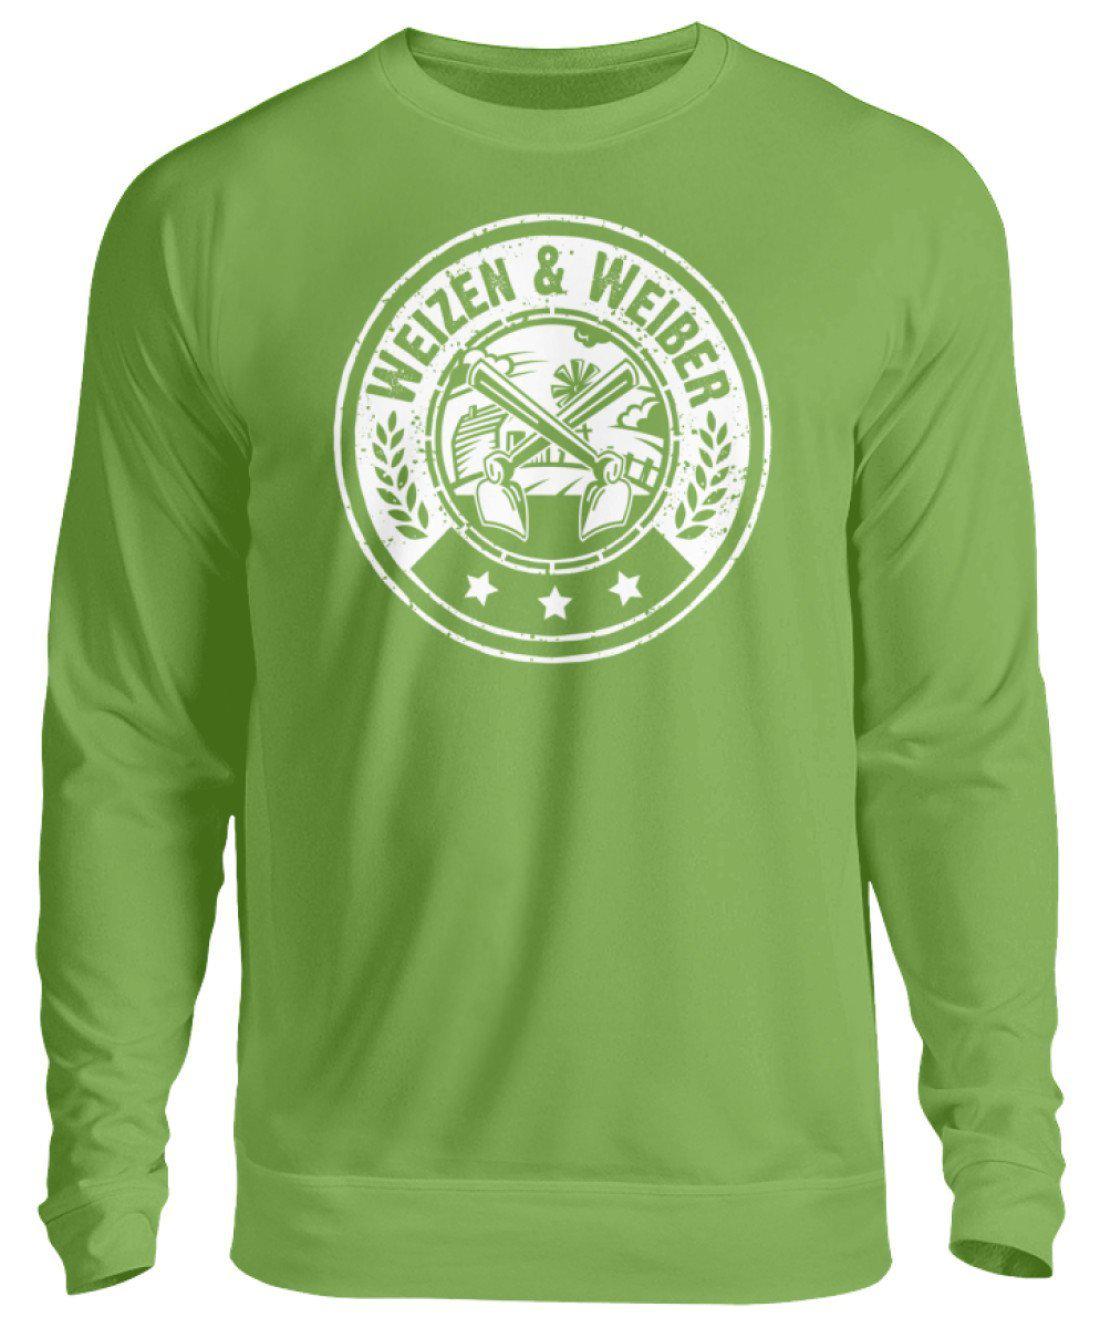 Weizen & Weiber · Unisex Sweatshirt Pullover-Unisex Sweatshirt-LimeGreen-S-Agrarstarz